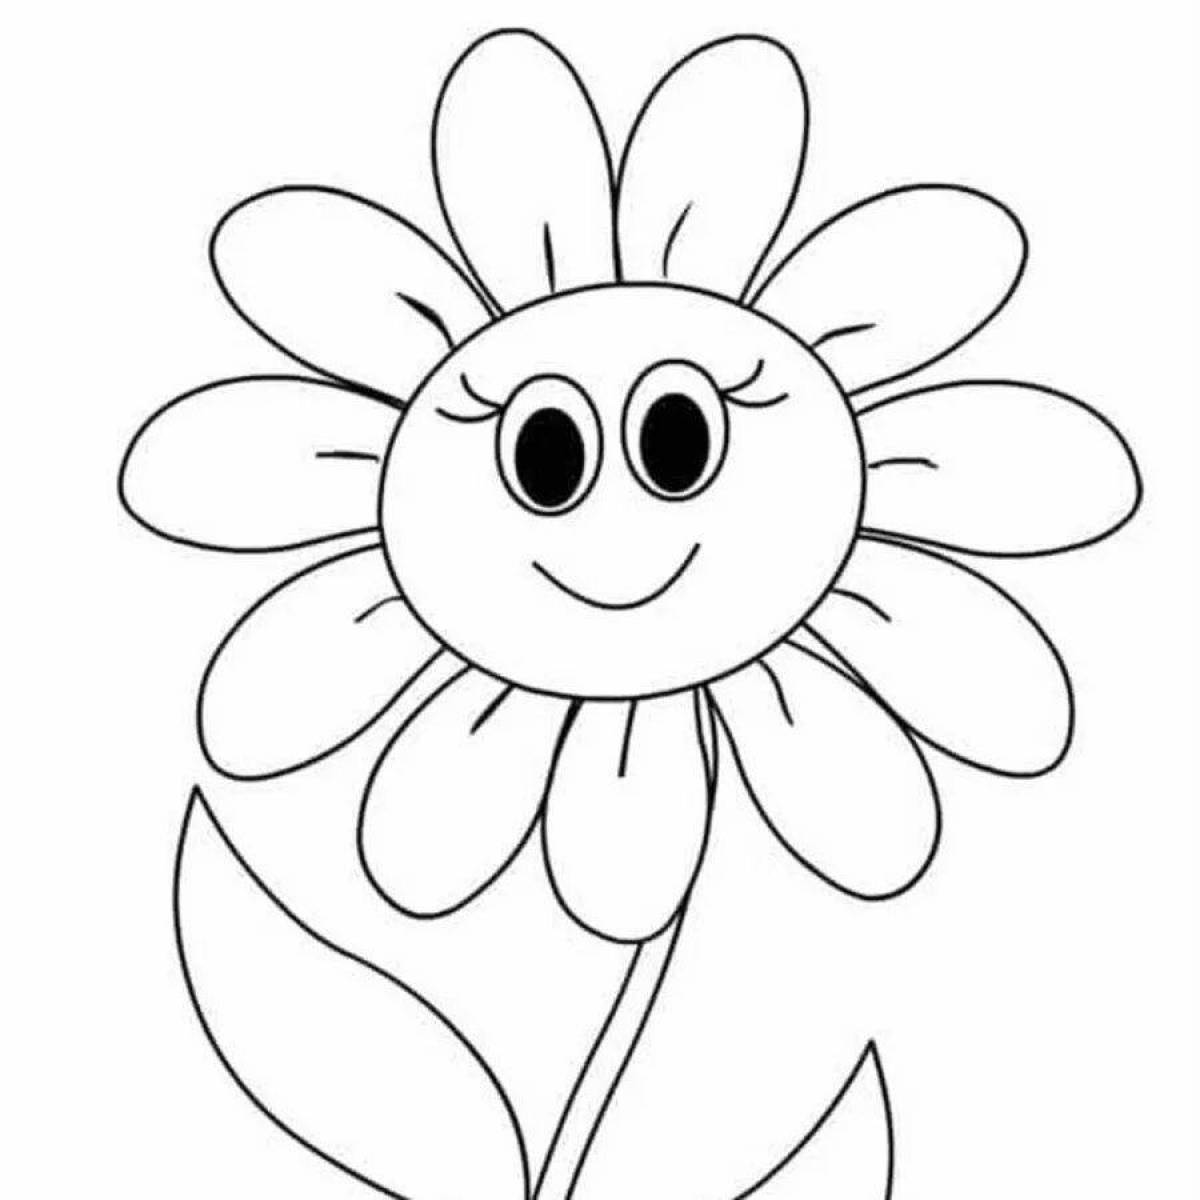 Раскраски Радужный цветок (26 шт.) - скачать или распечатать бесплатно#26242